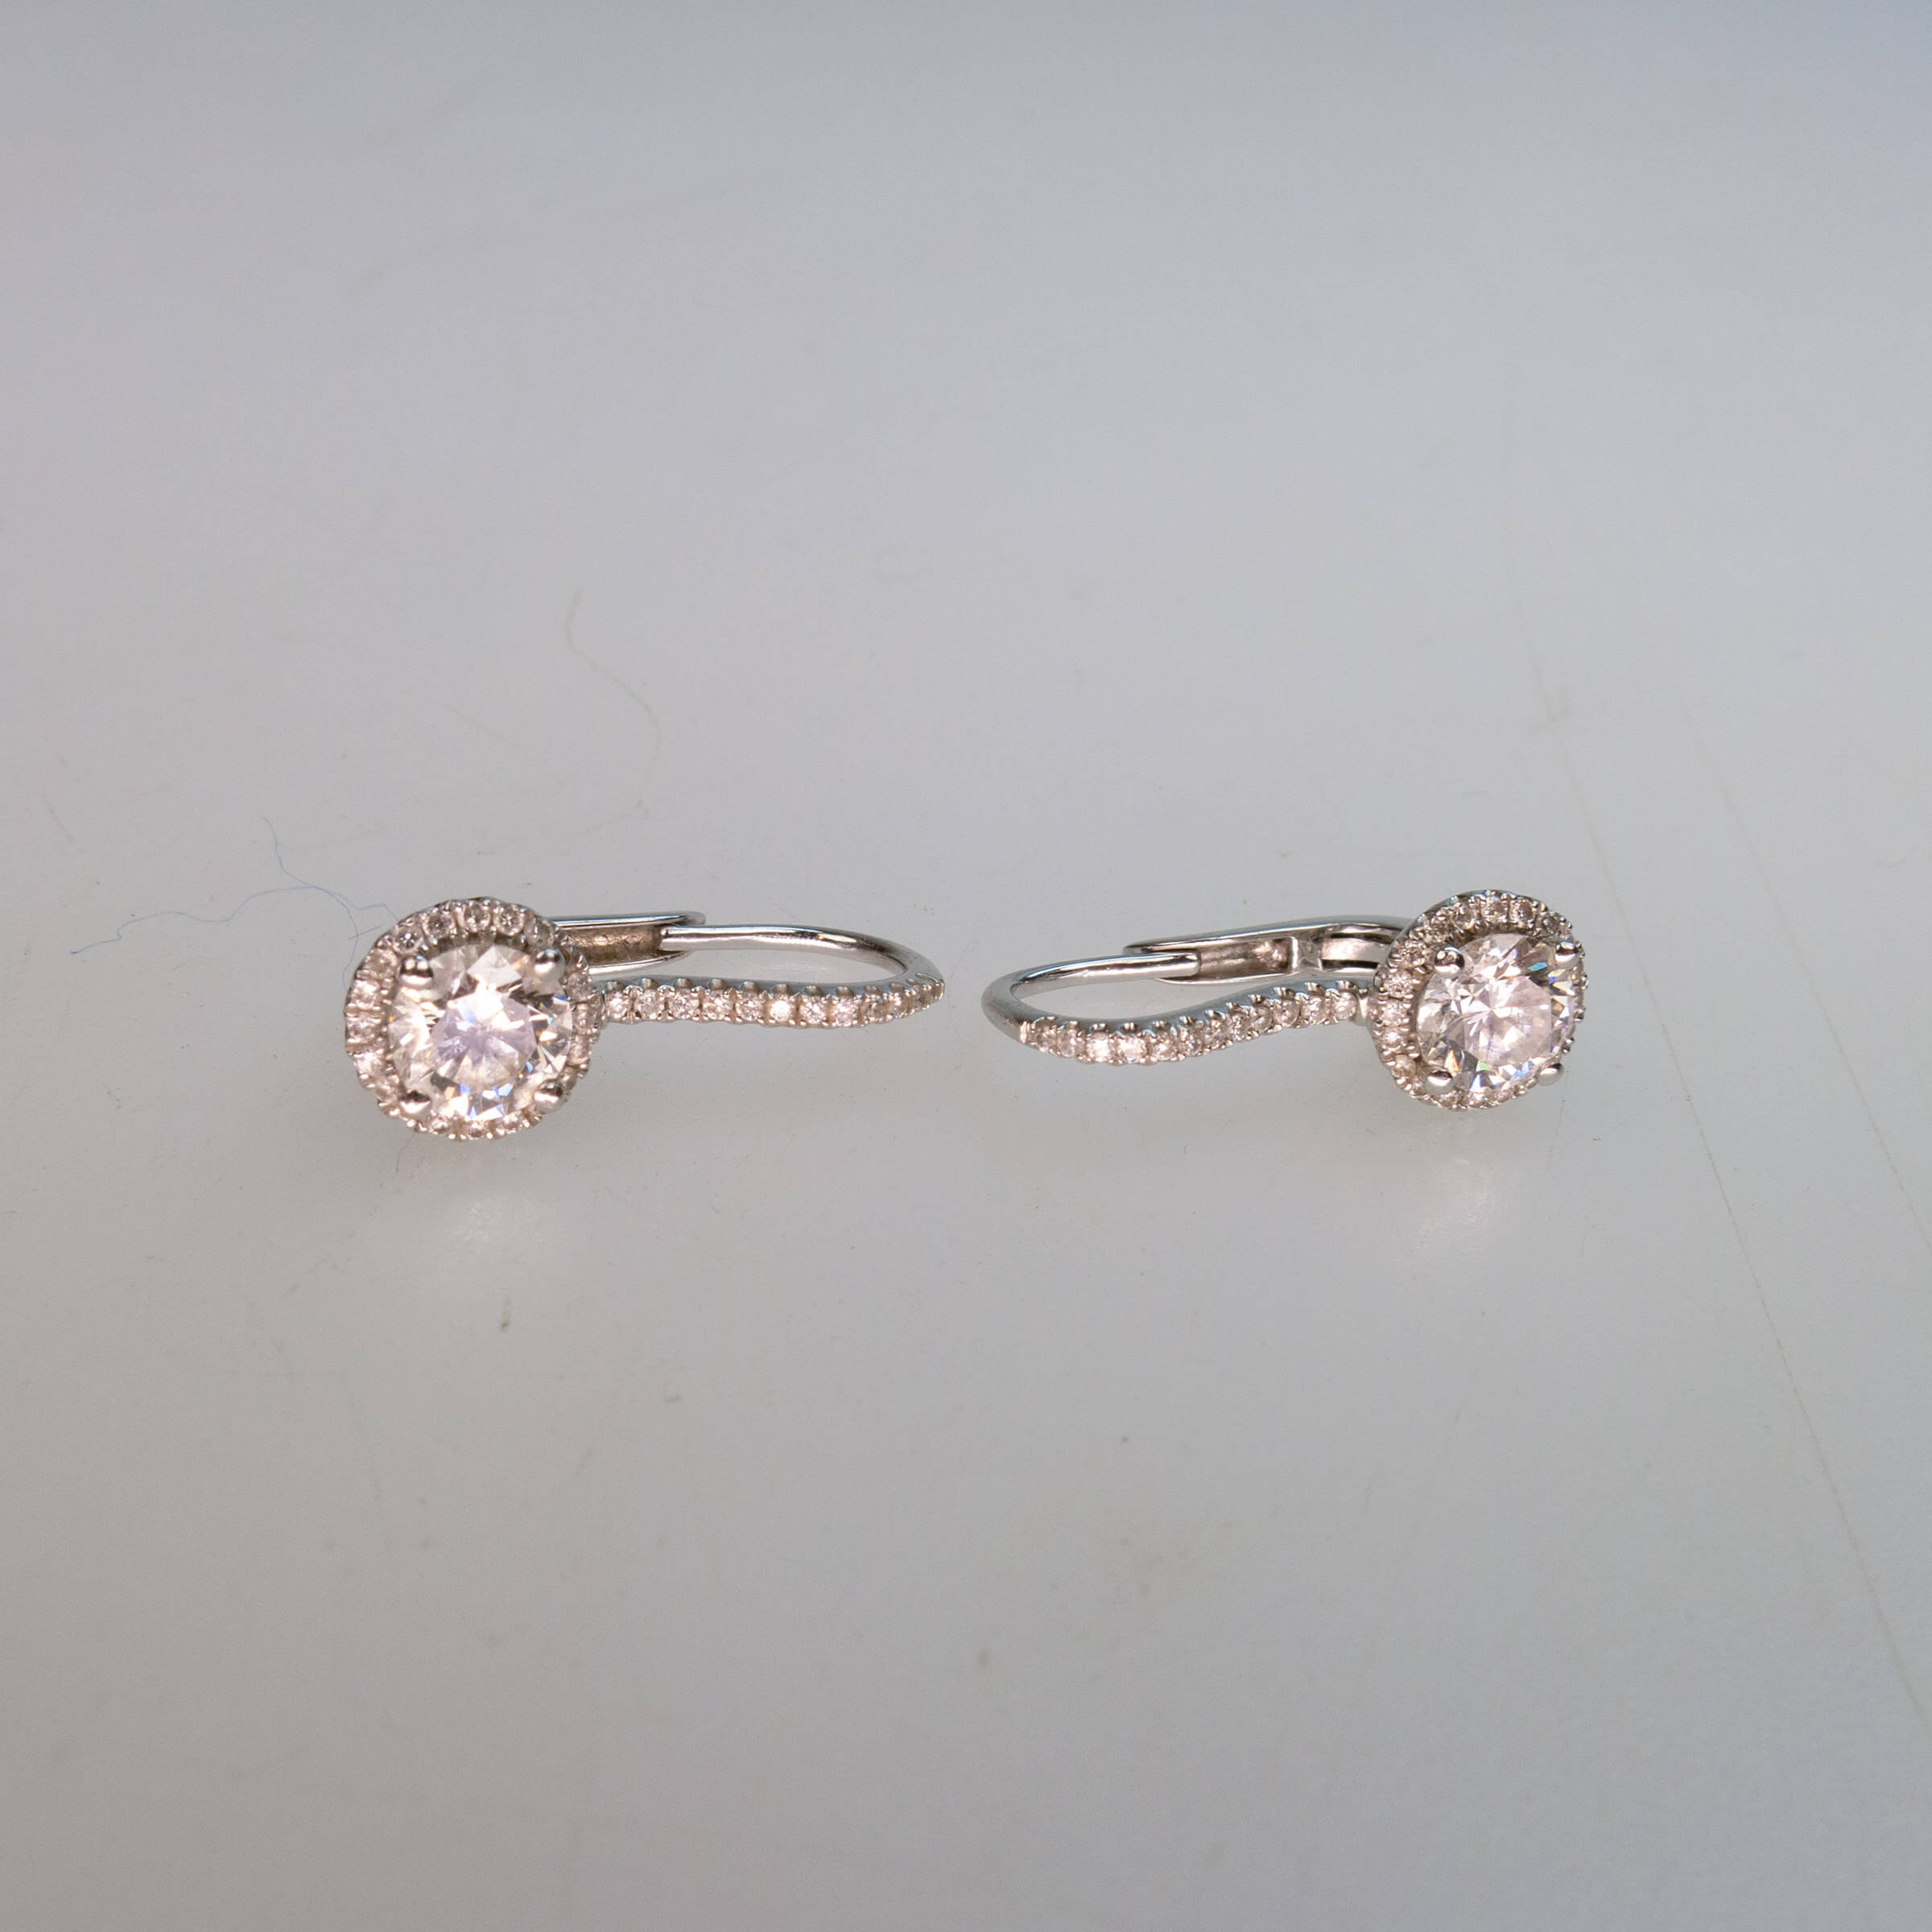 Pair Of 14k White Gold Hook-Back Earrings